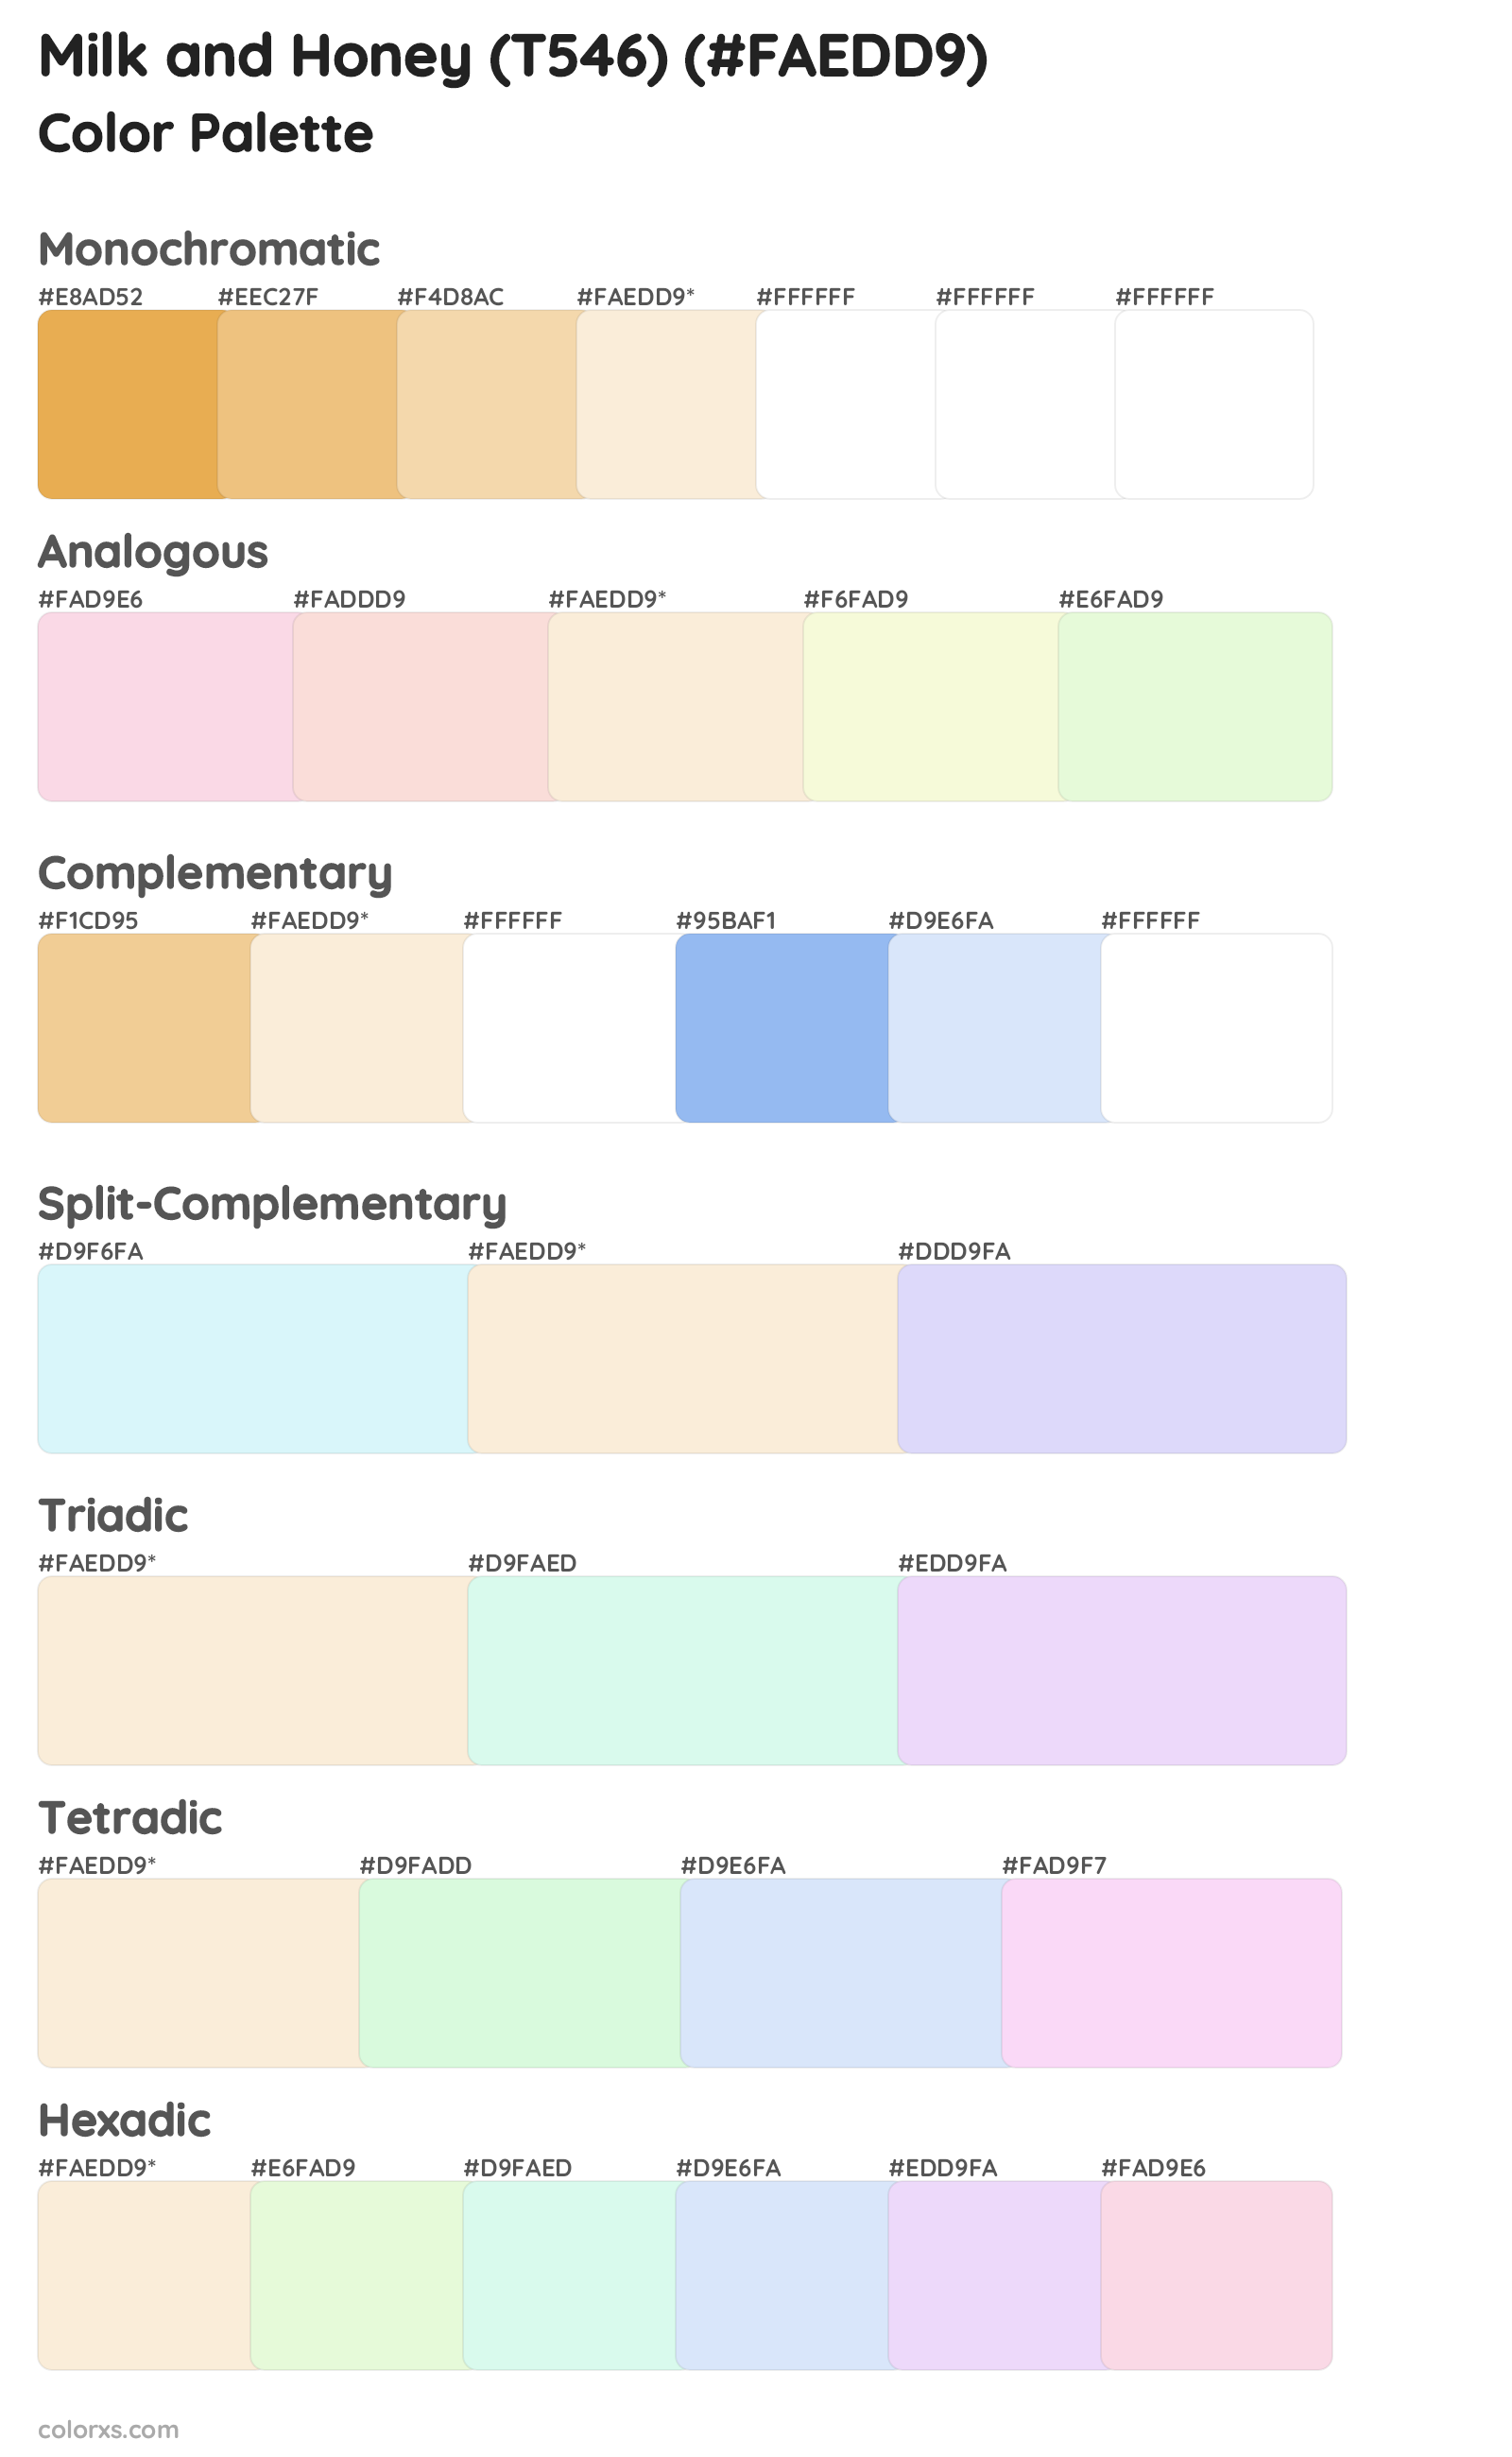 Milk and Honey (T546) Color Scheme Palettes